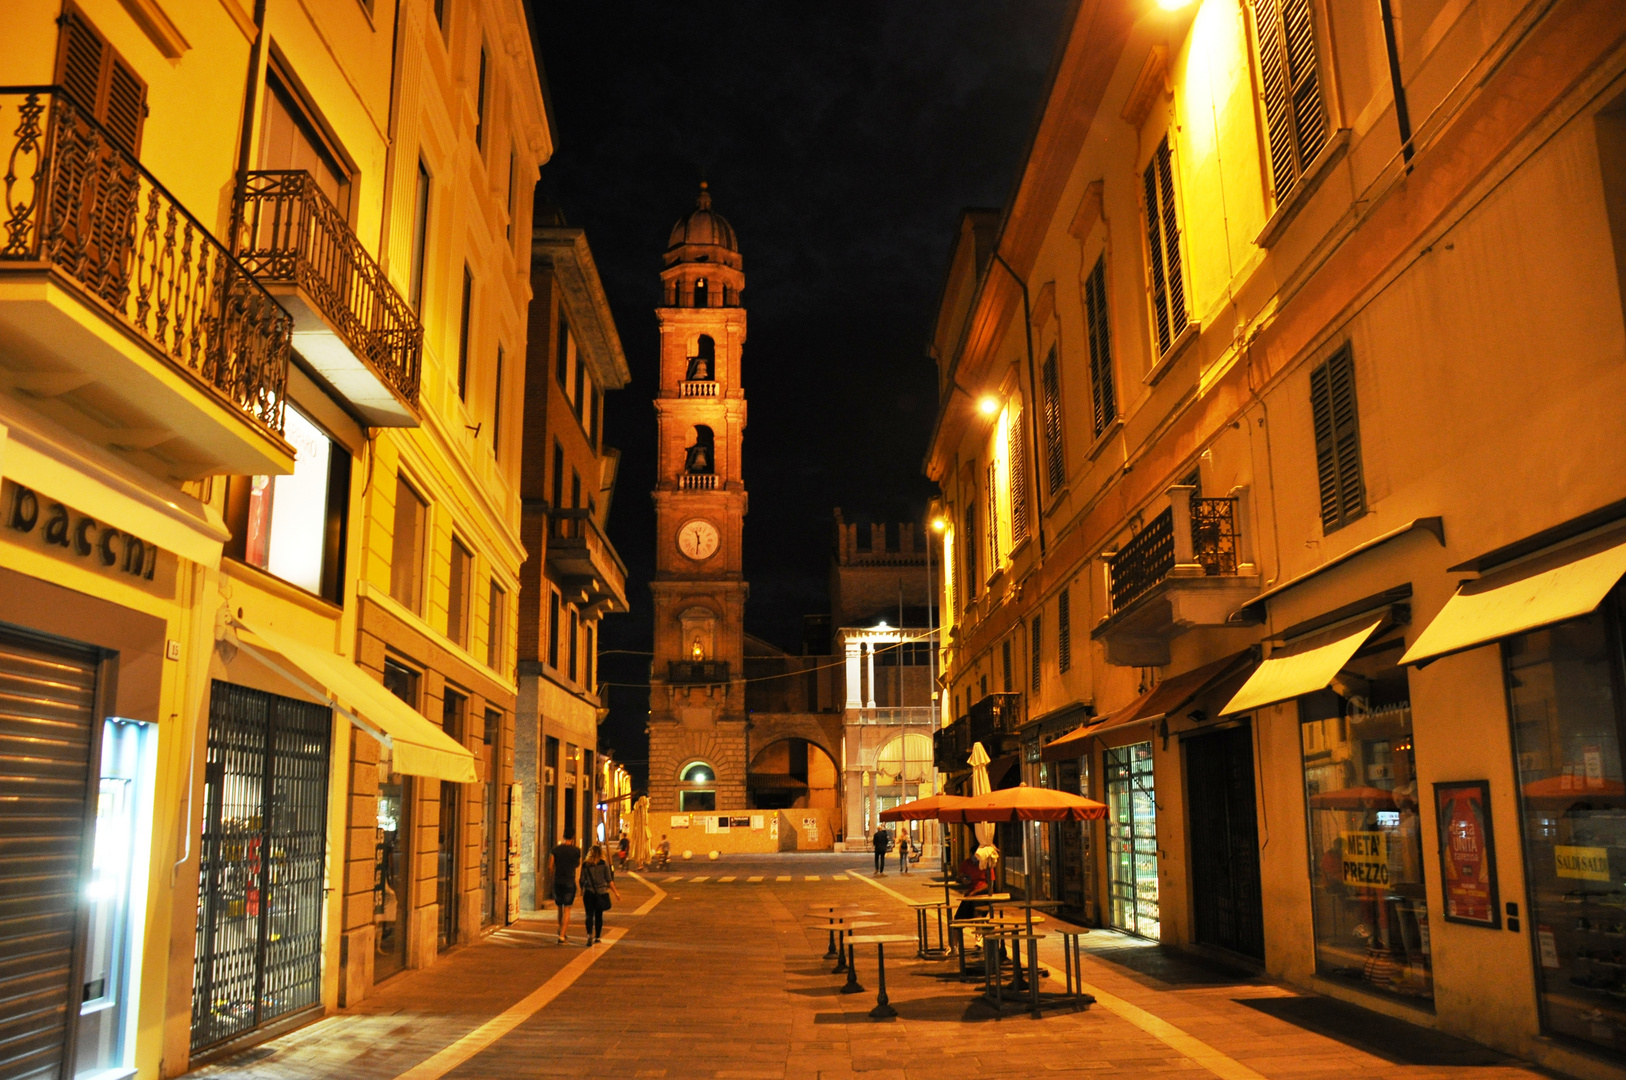 Faenza, Emilia Romagna